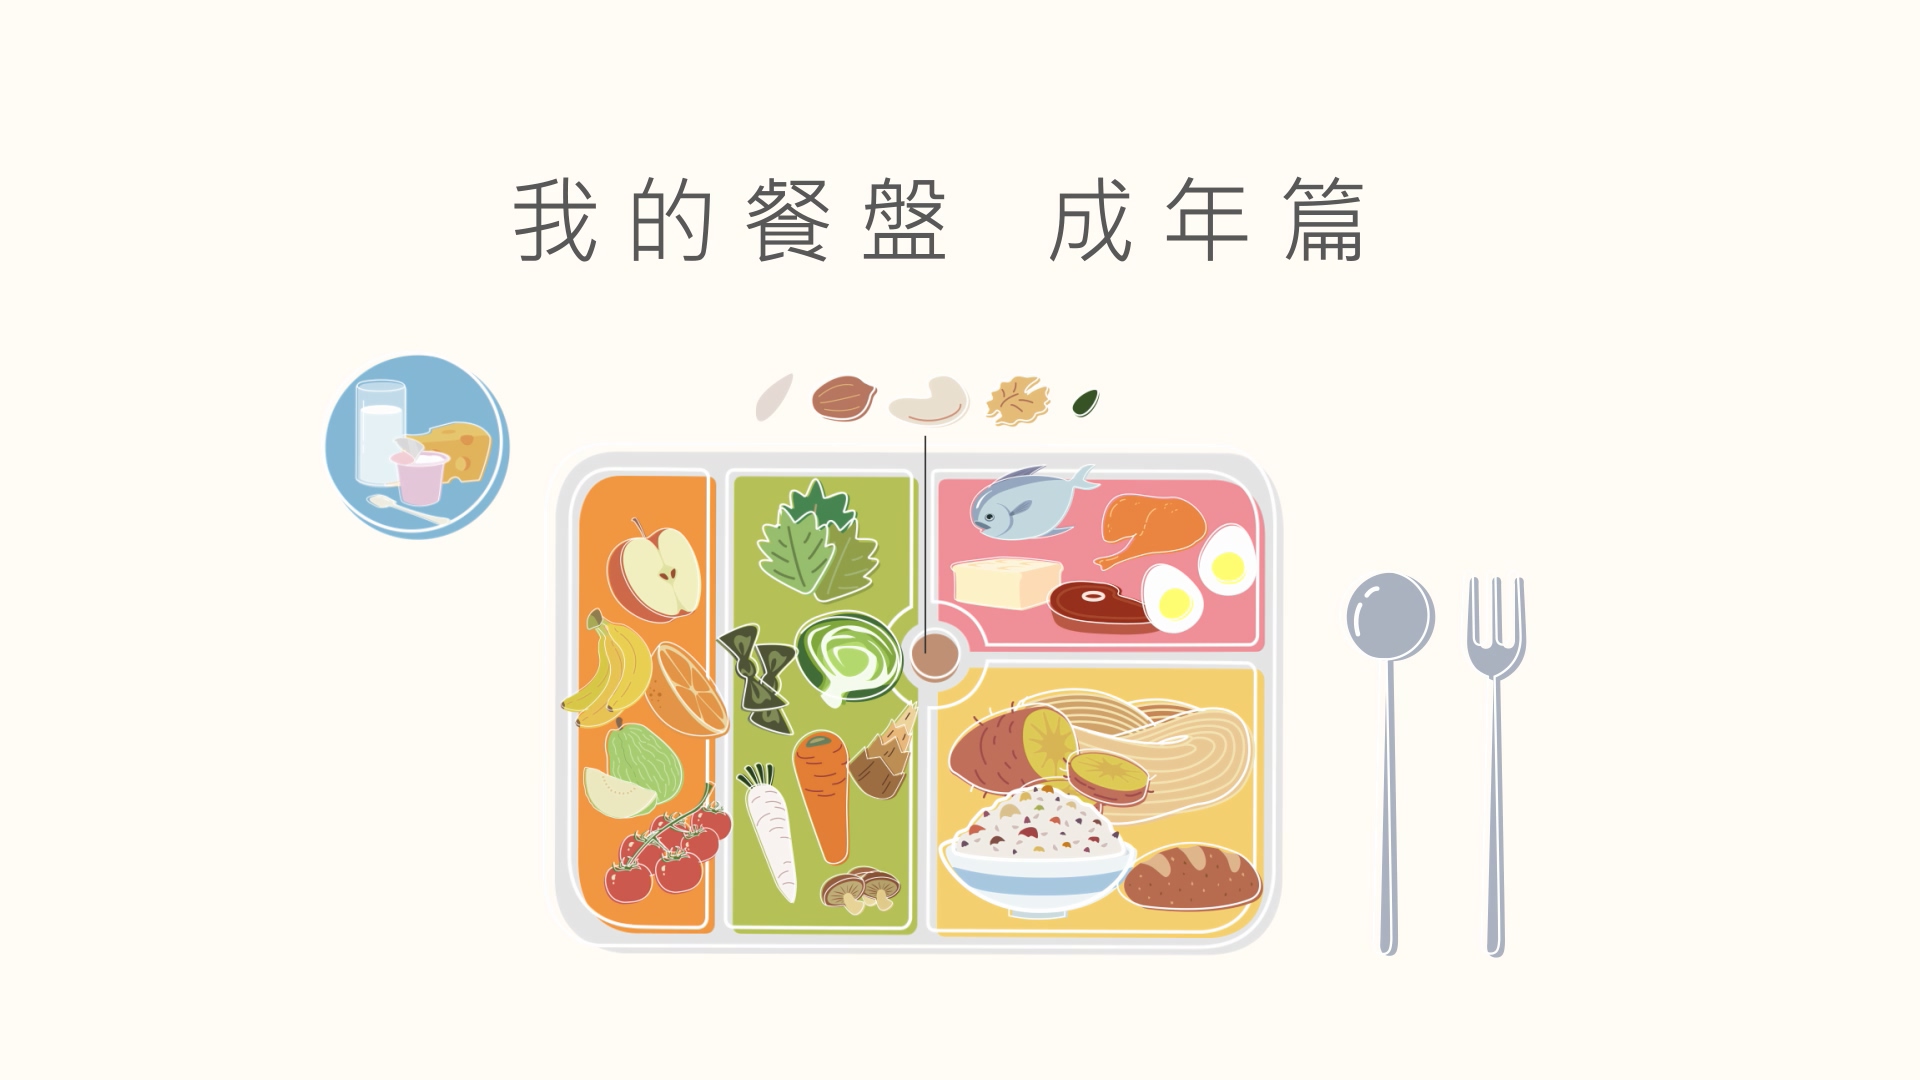 「我的餐盤」均衡飲食_成年篇(影片)文章照片